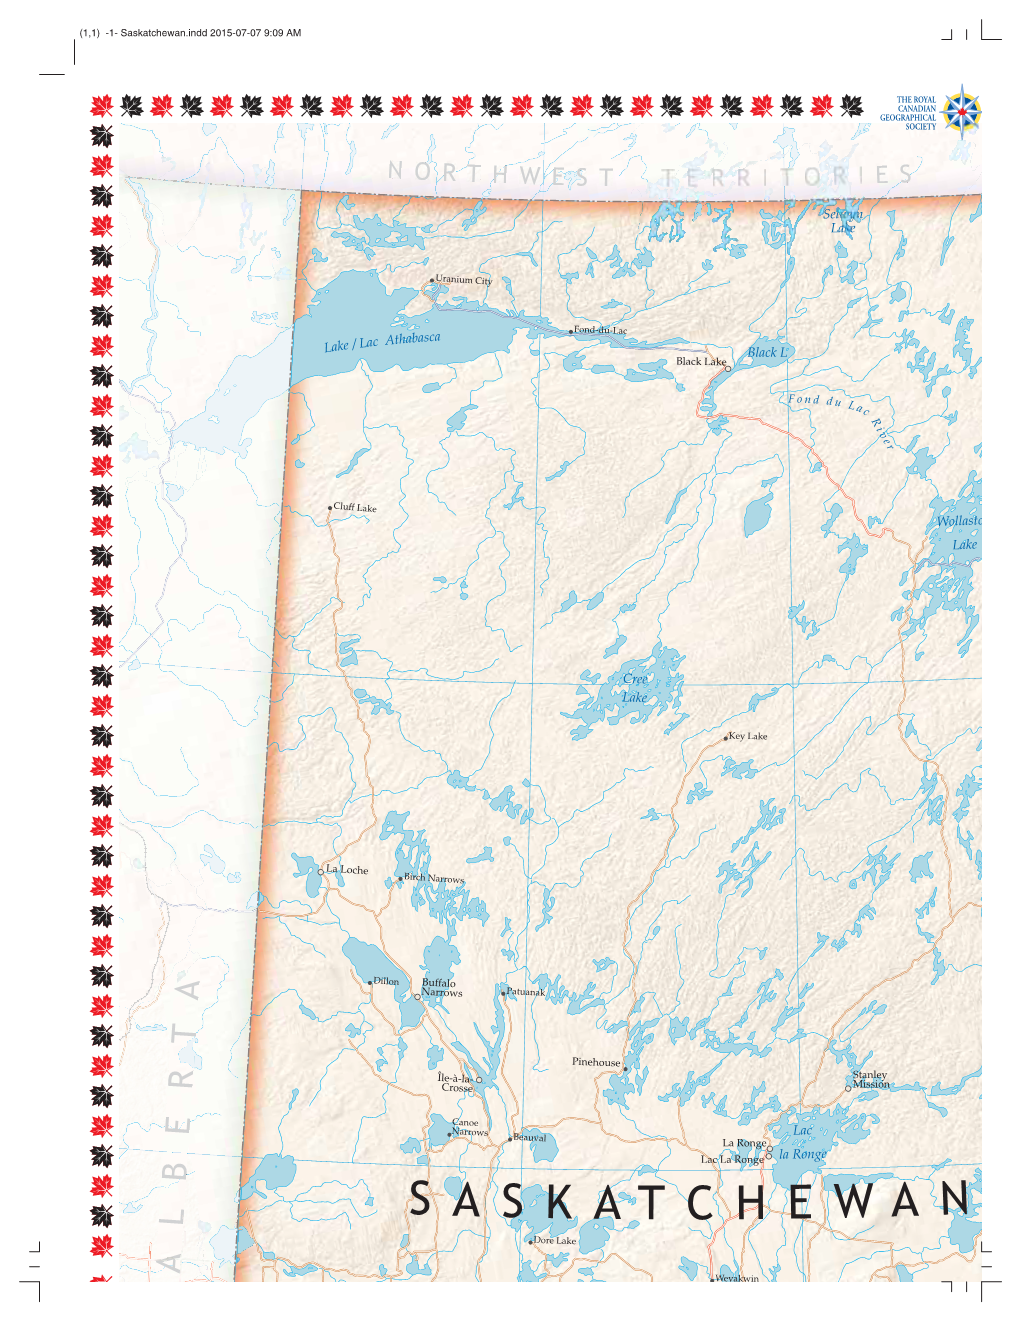 Saskatchewan.Indd 2015-07-07 9:09 AM